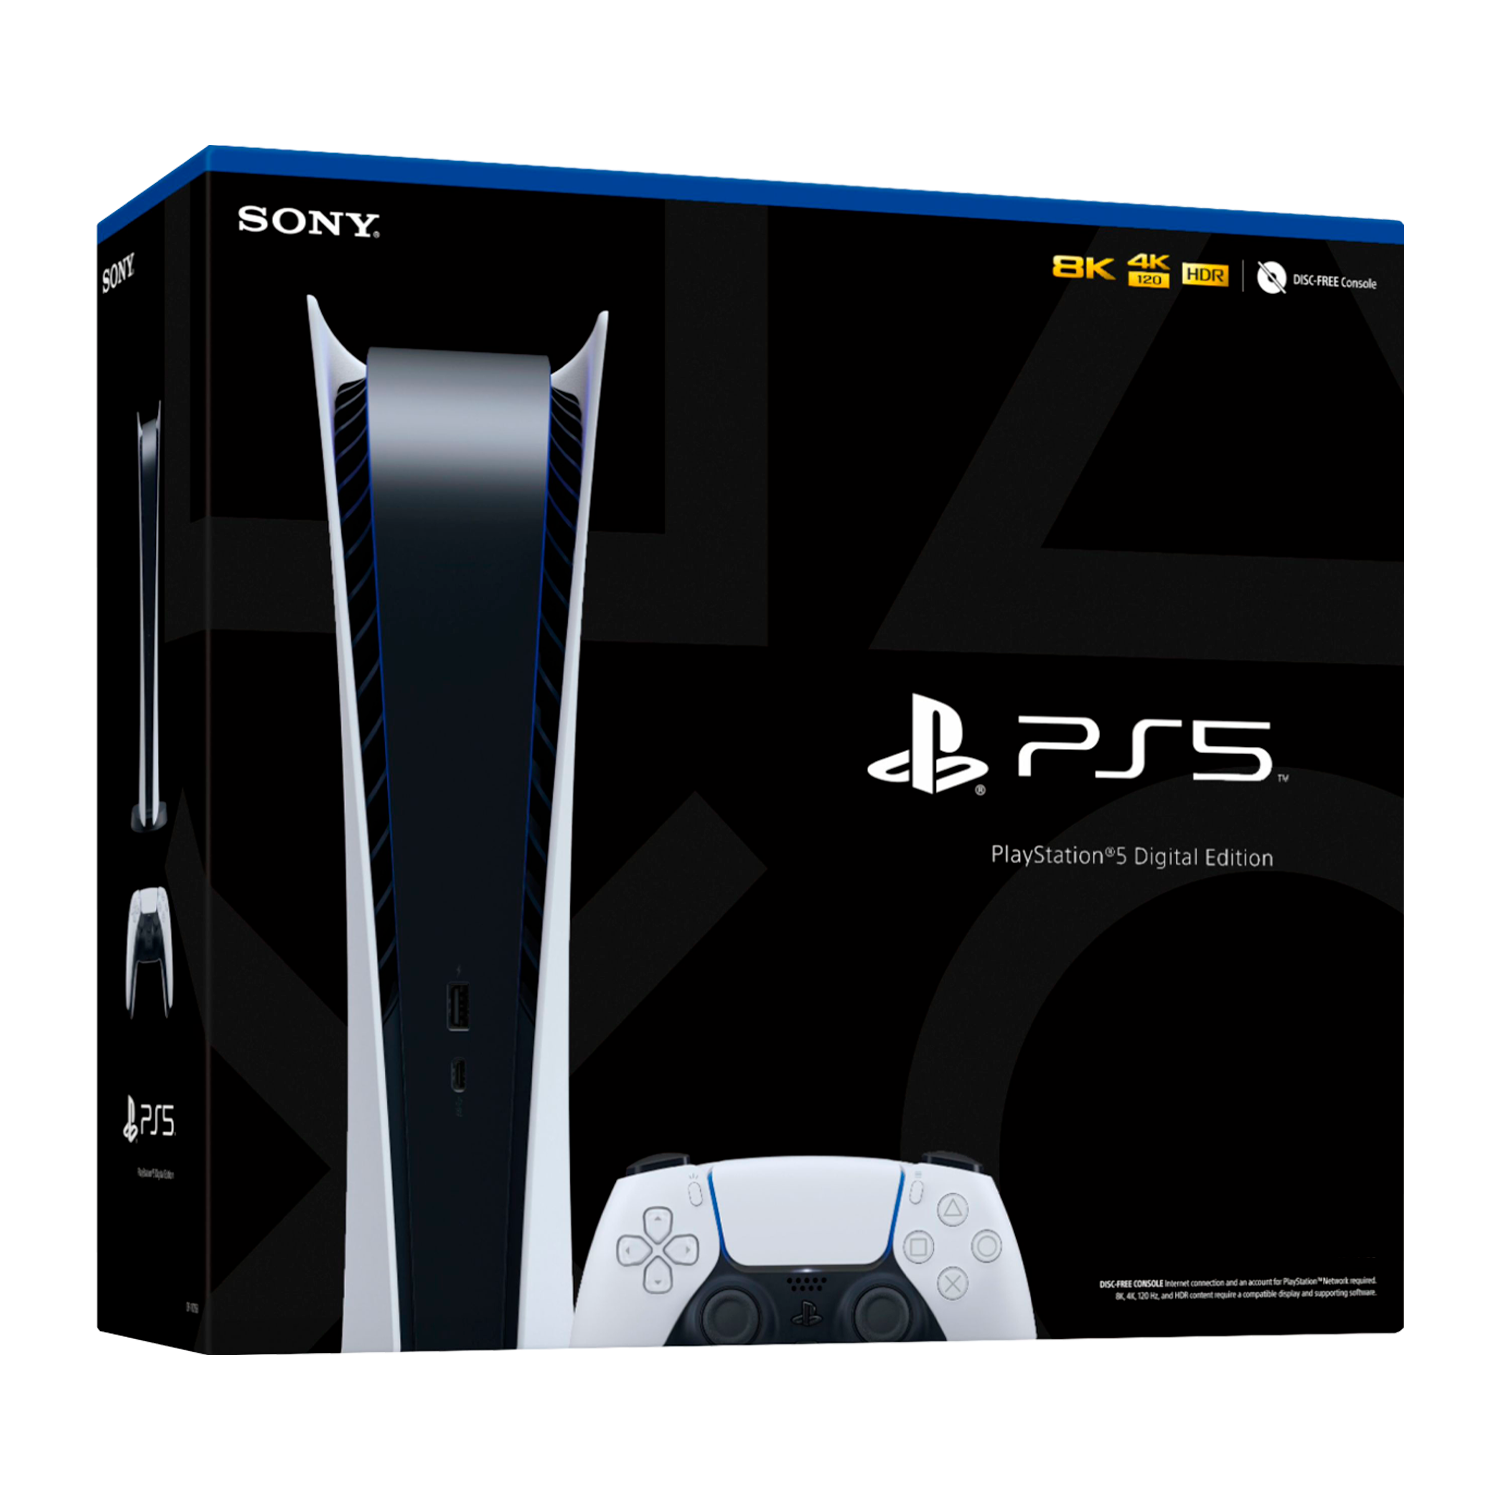 Console Sony Playstation 5 Digital Edition CFI-1100B / SSD 825GB / 110V - Branco (Japonês)